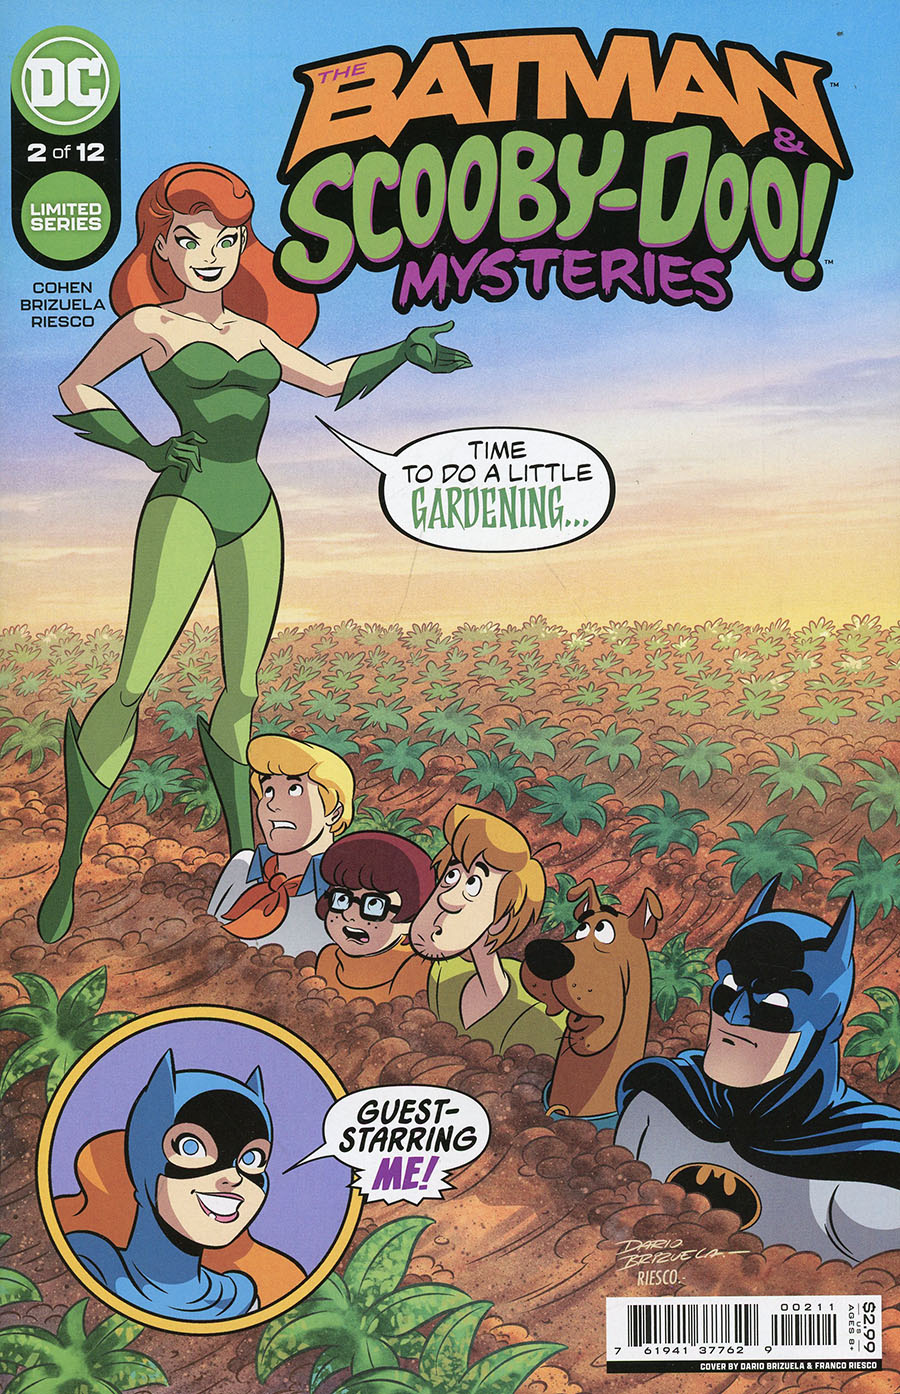 Batman & Scooby-Doo Mysteries Vol 2 #2